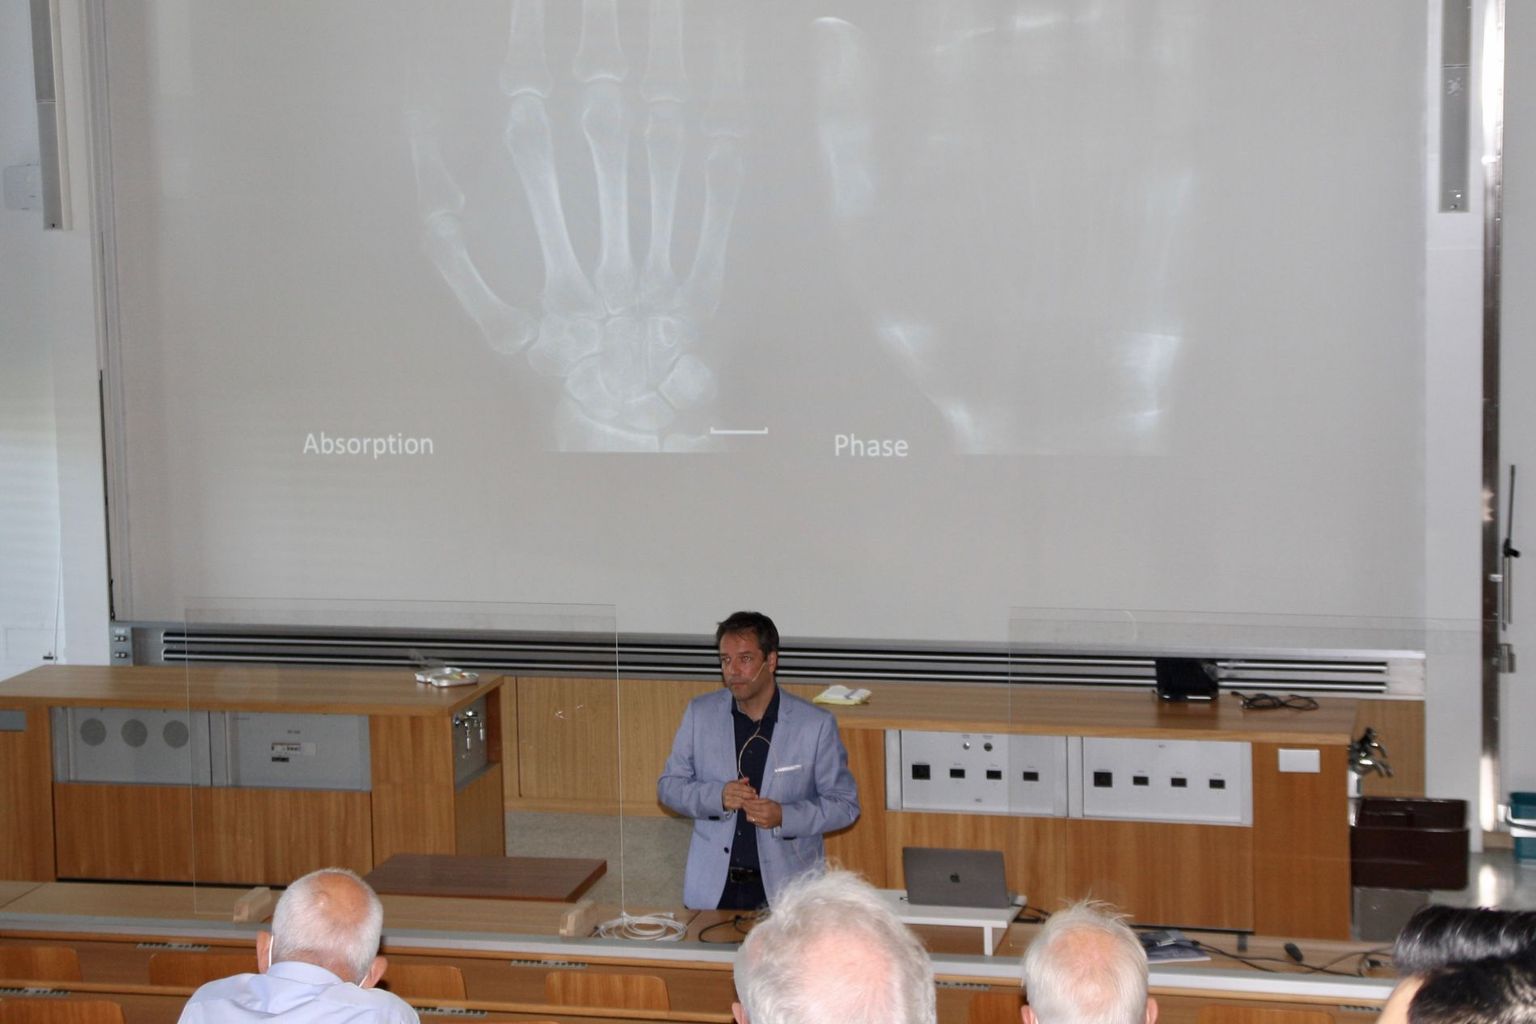 Marco Stampanoni présente lors du Symposium Röntgen 2021 comment l'analyse de phase par rayons X complète les images d'absorption.